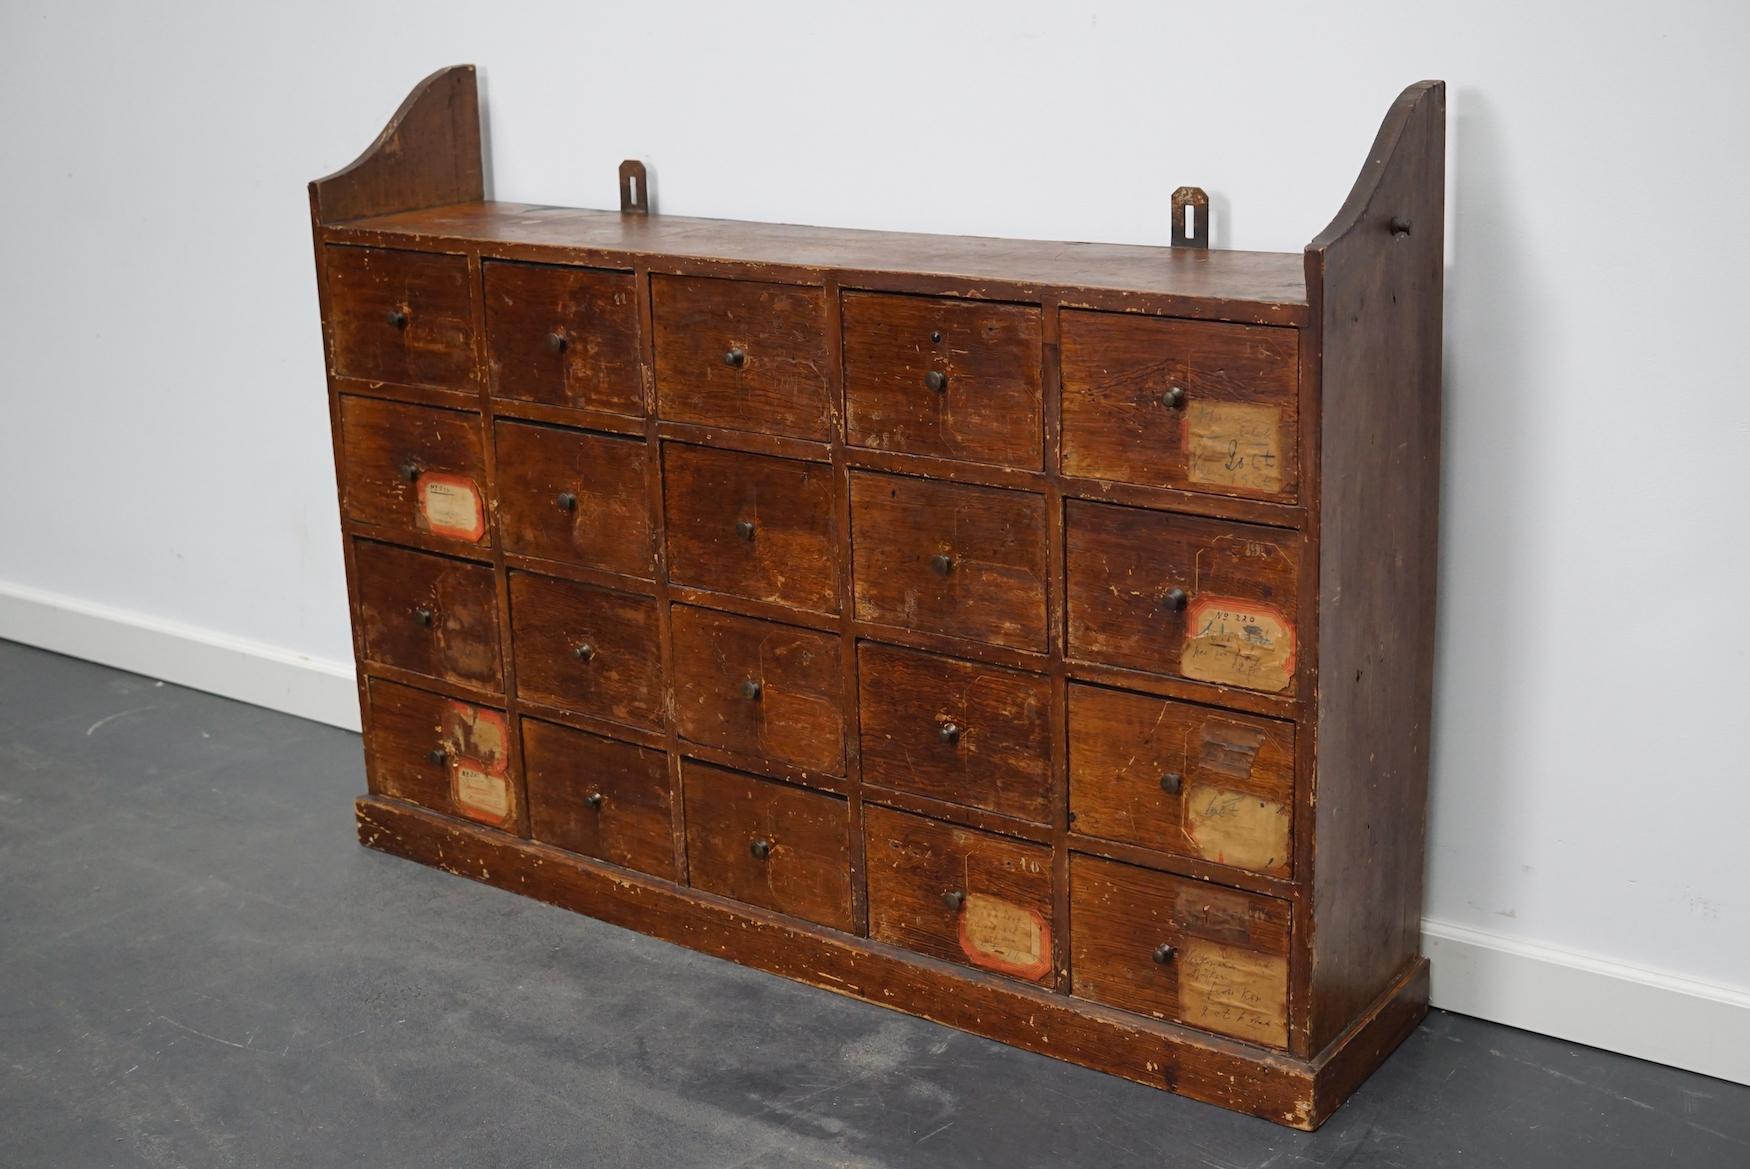 Cette armoire d'atelier a été fabriquée en pin aux Pays-Bas dans les années 1920 et était utilisée dans un atelier de réparation de vélos jusqu'à récemment. Il comporte 20 tiroirs avec de petits boutons. Certains des tiroirs ont des séparateurs. Les